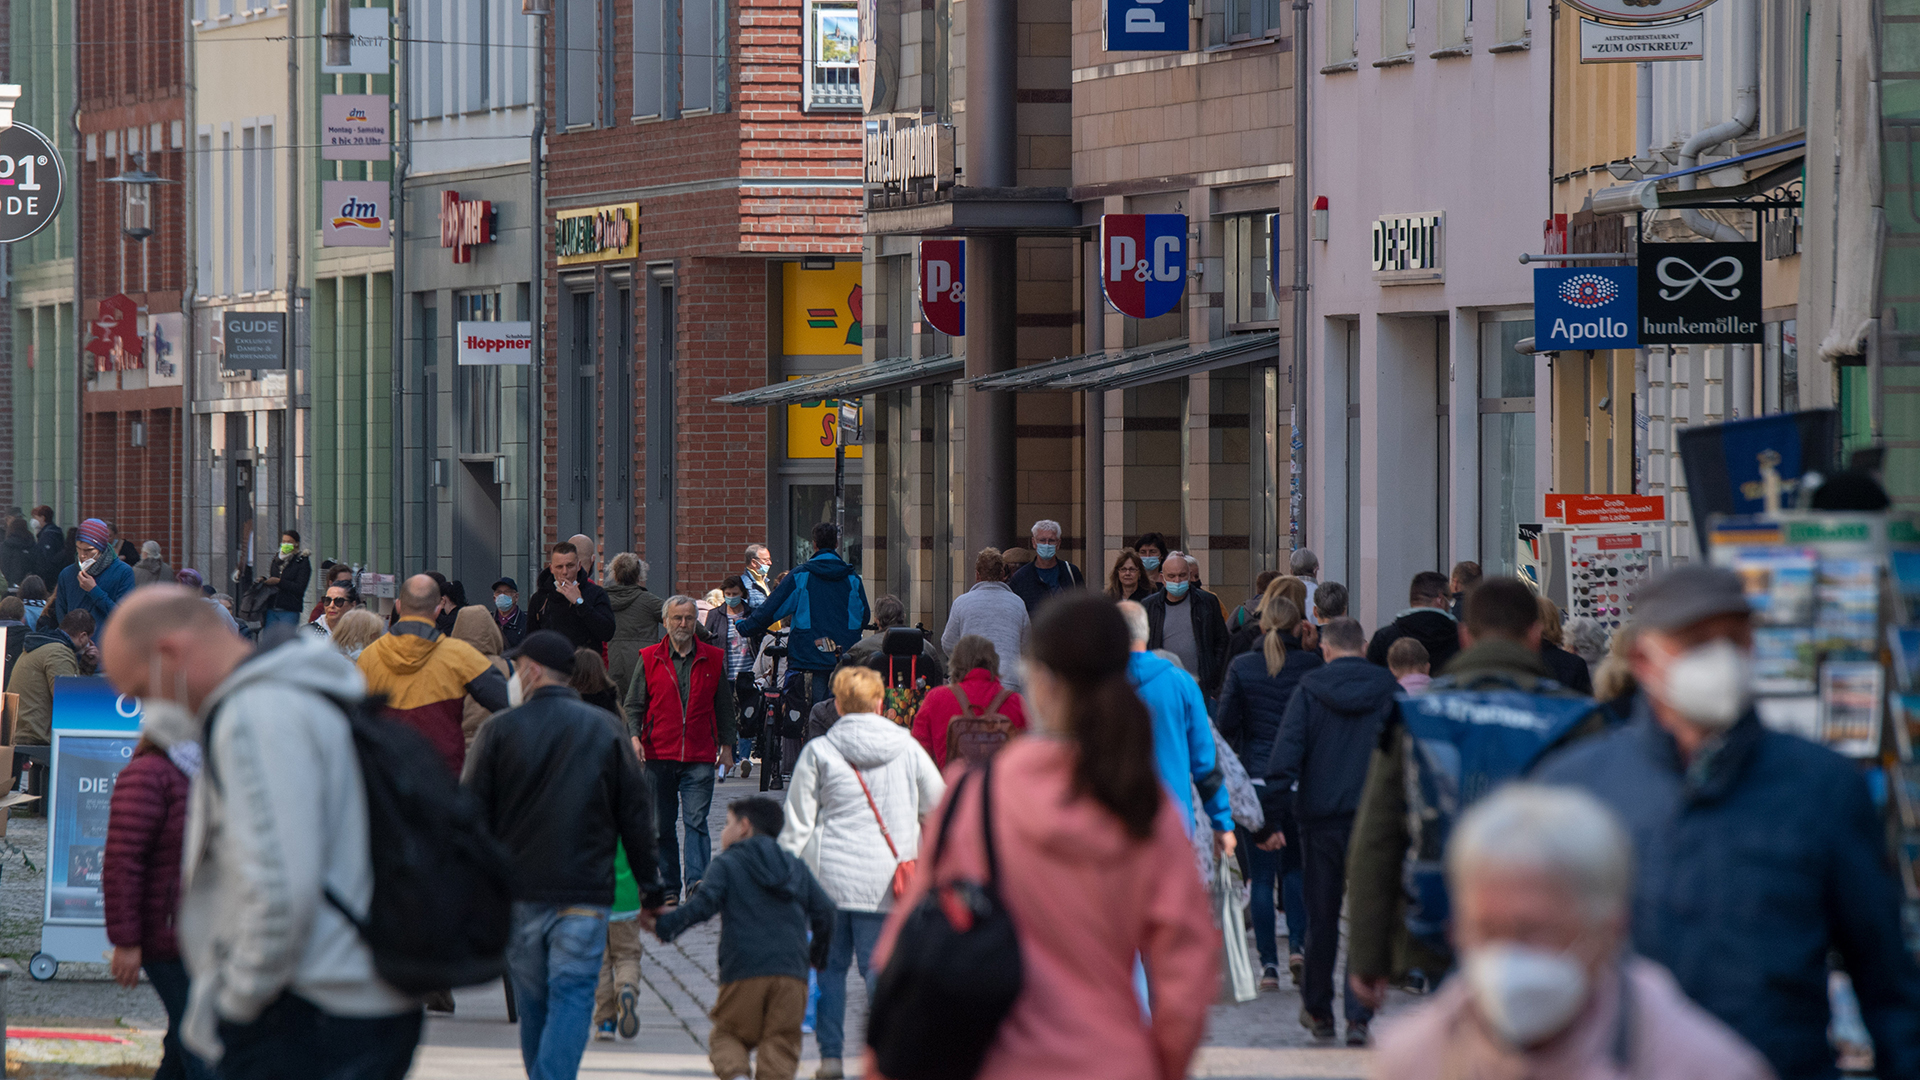 Auf der Einkaufsstraße und Fußgängerzone Ossenreyer Straße sind zahlreiche Passanten unterwegs. (Archivbild: 14.05.2021) | picture alliance/dpa